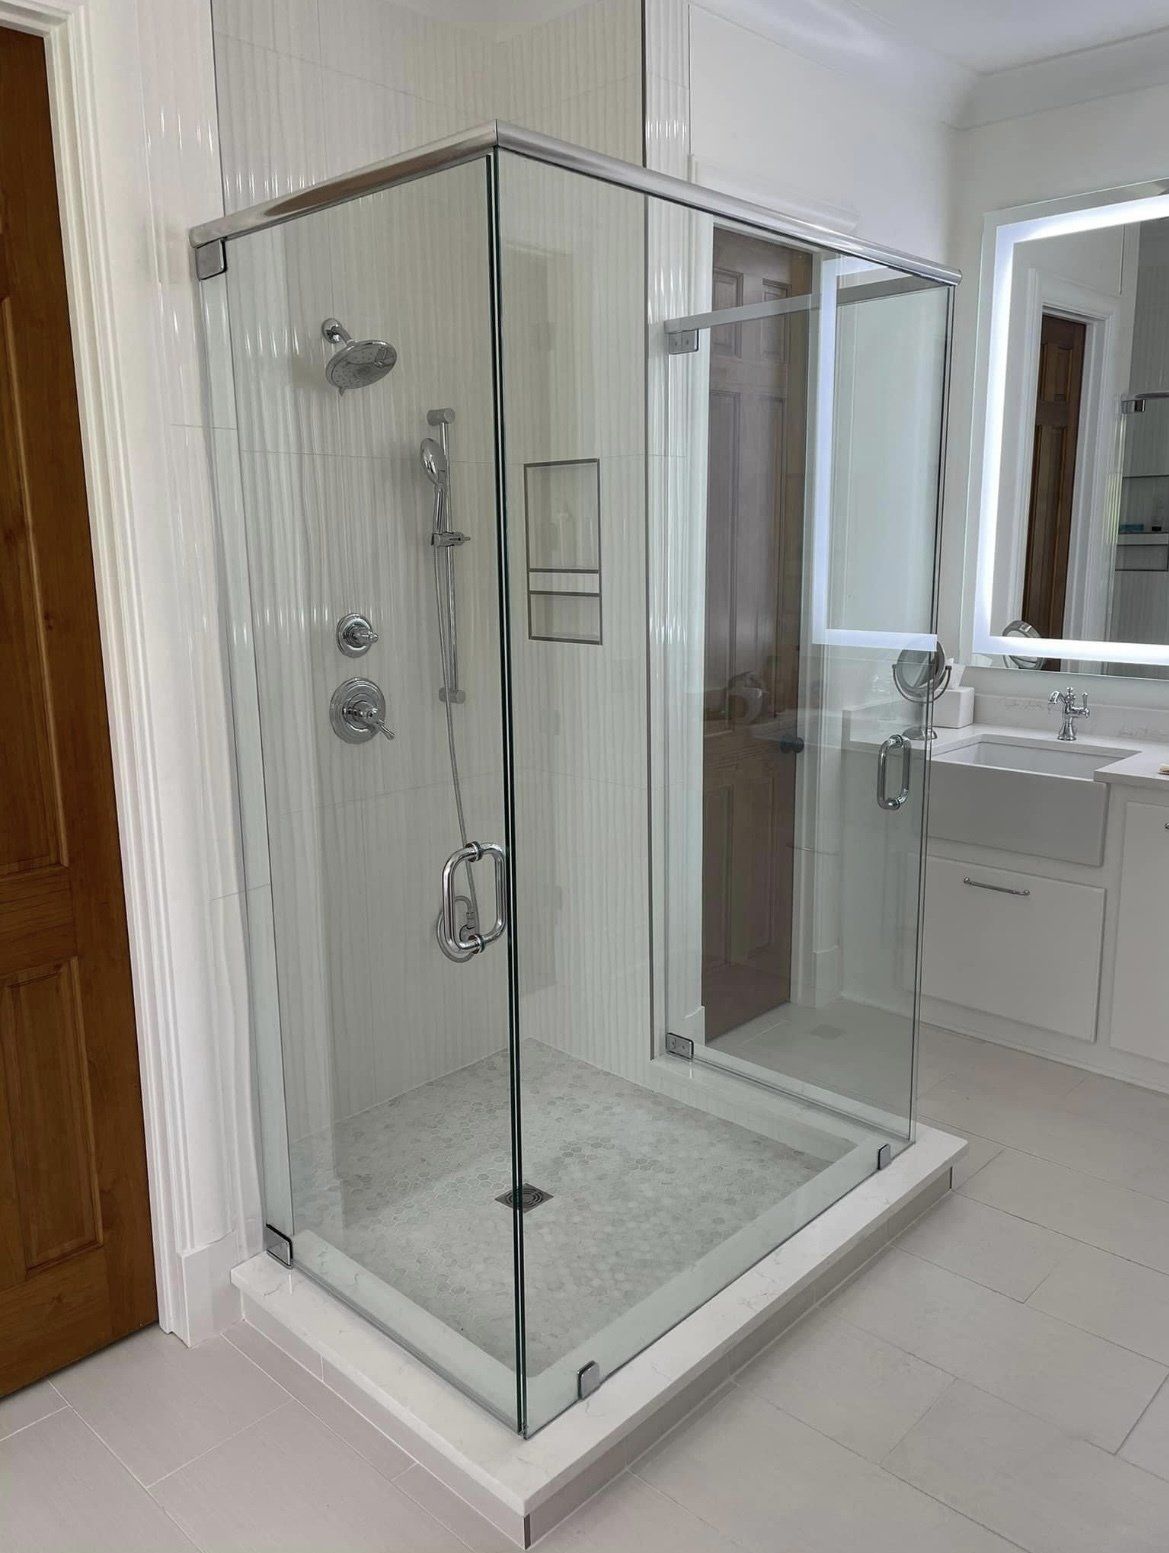 Mirror and Shower Glass Door Repairs | Ridgeland, MS